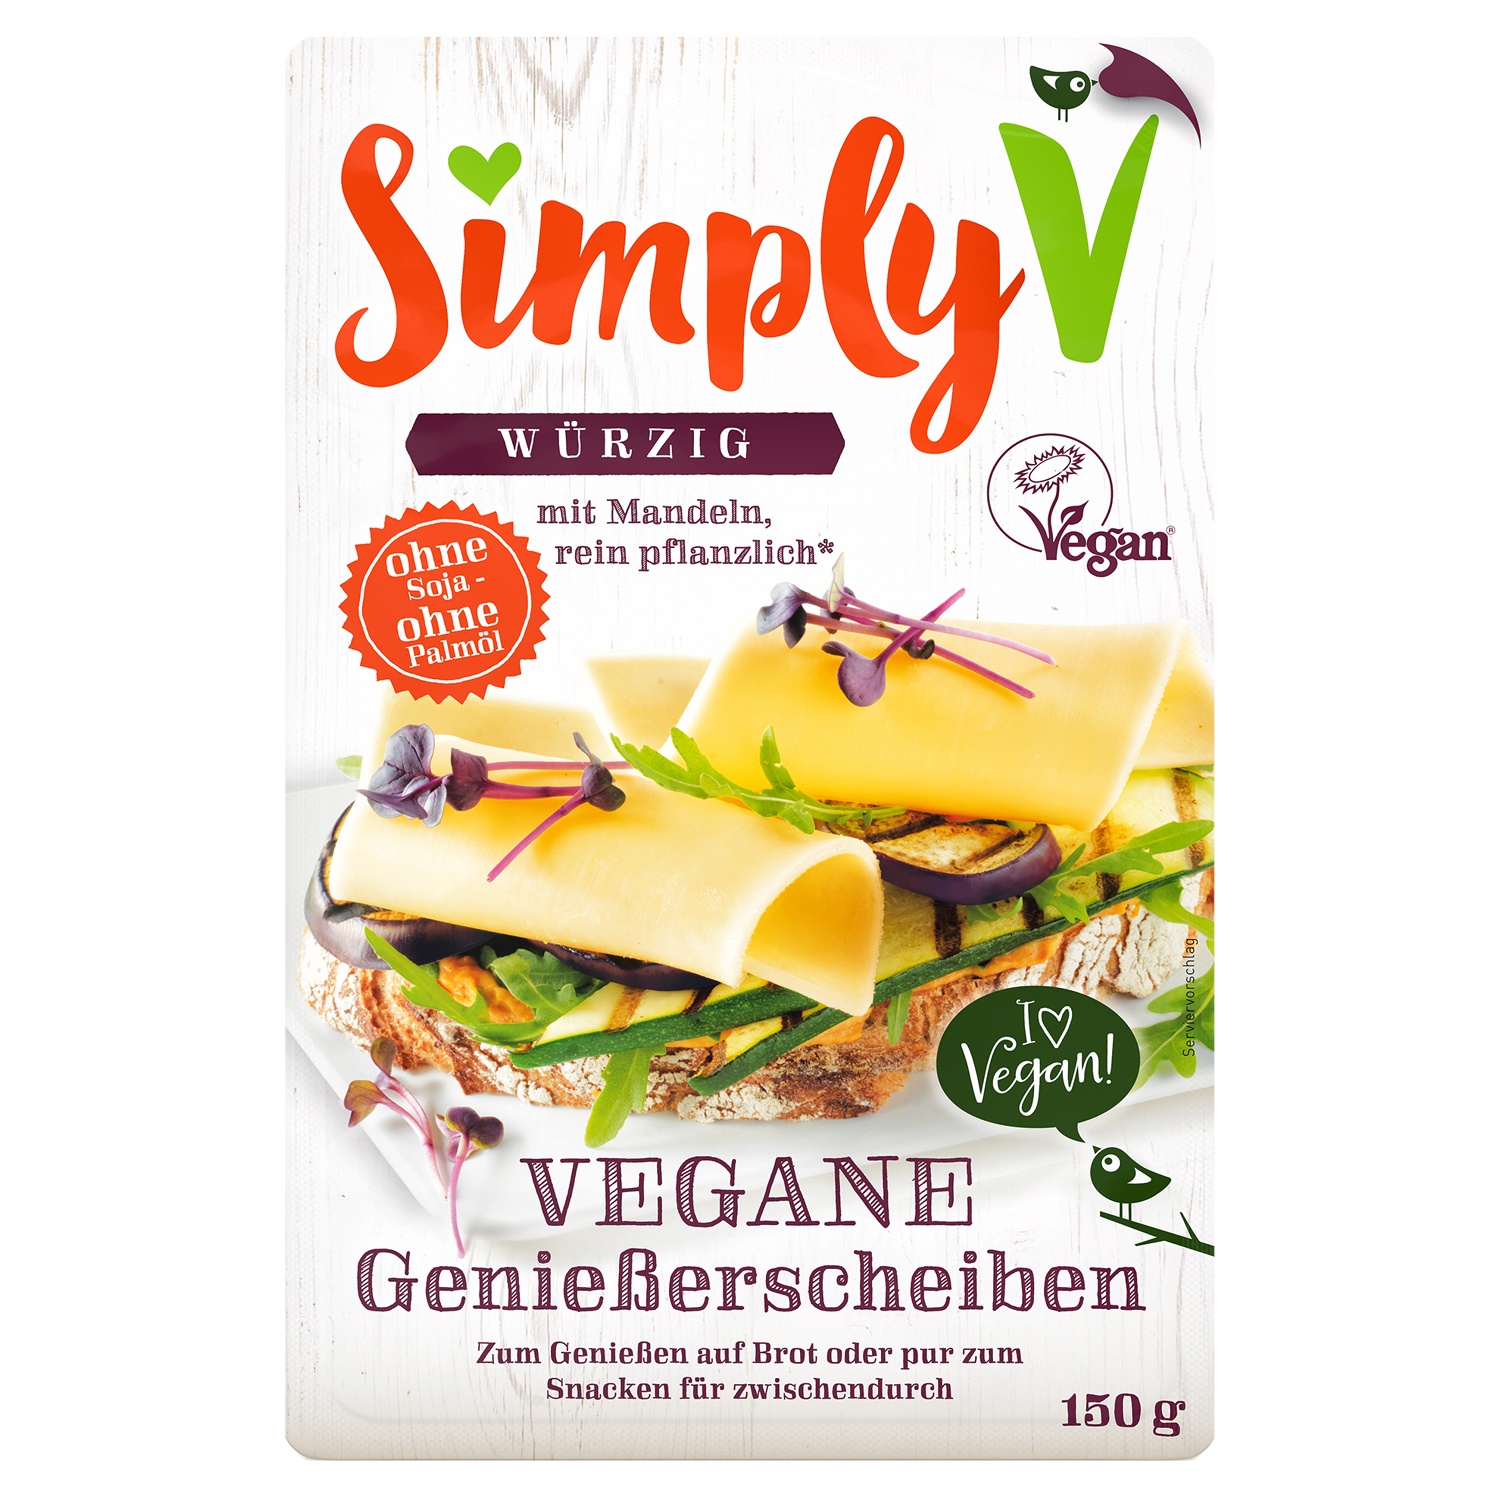 Vegane/r Genießerscheiben/Streichgenuss 150 g